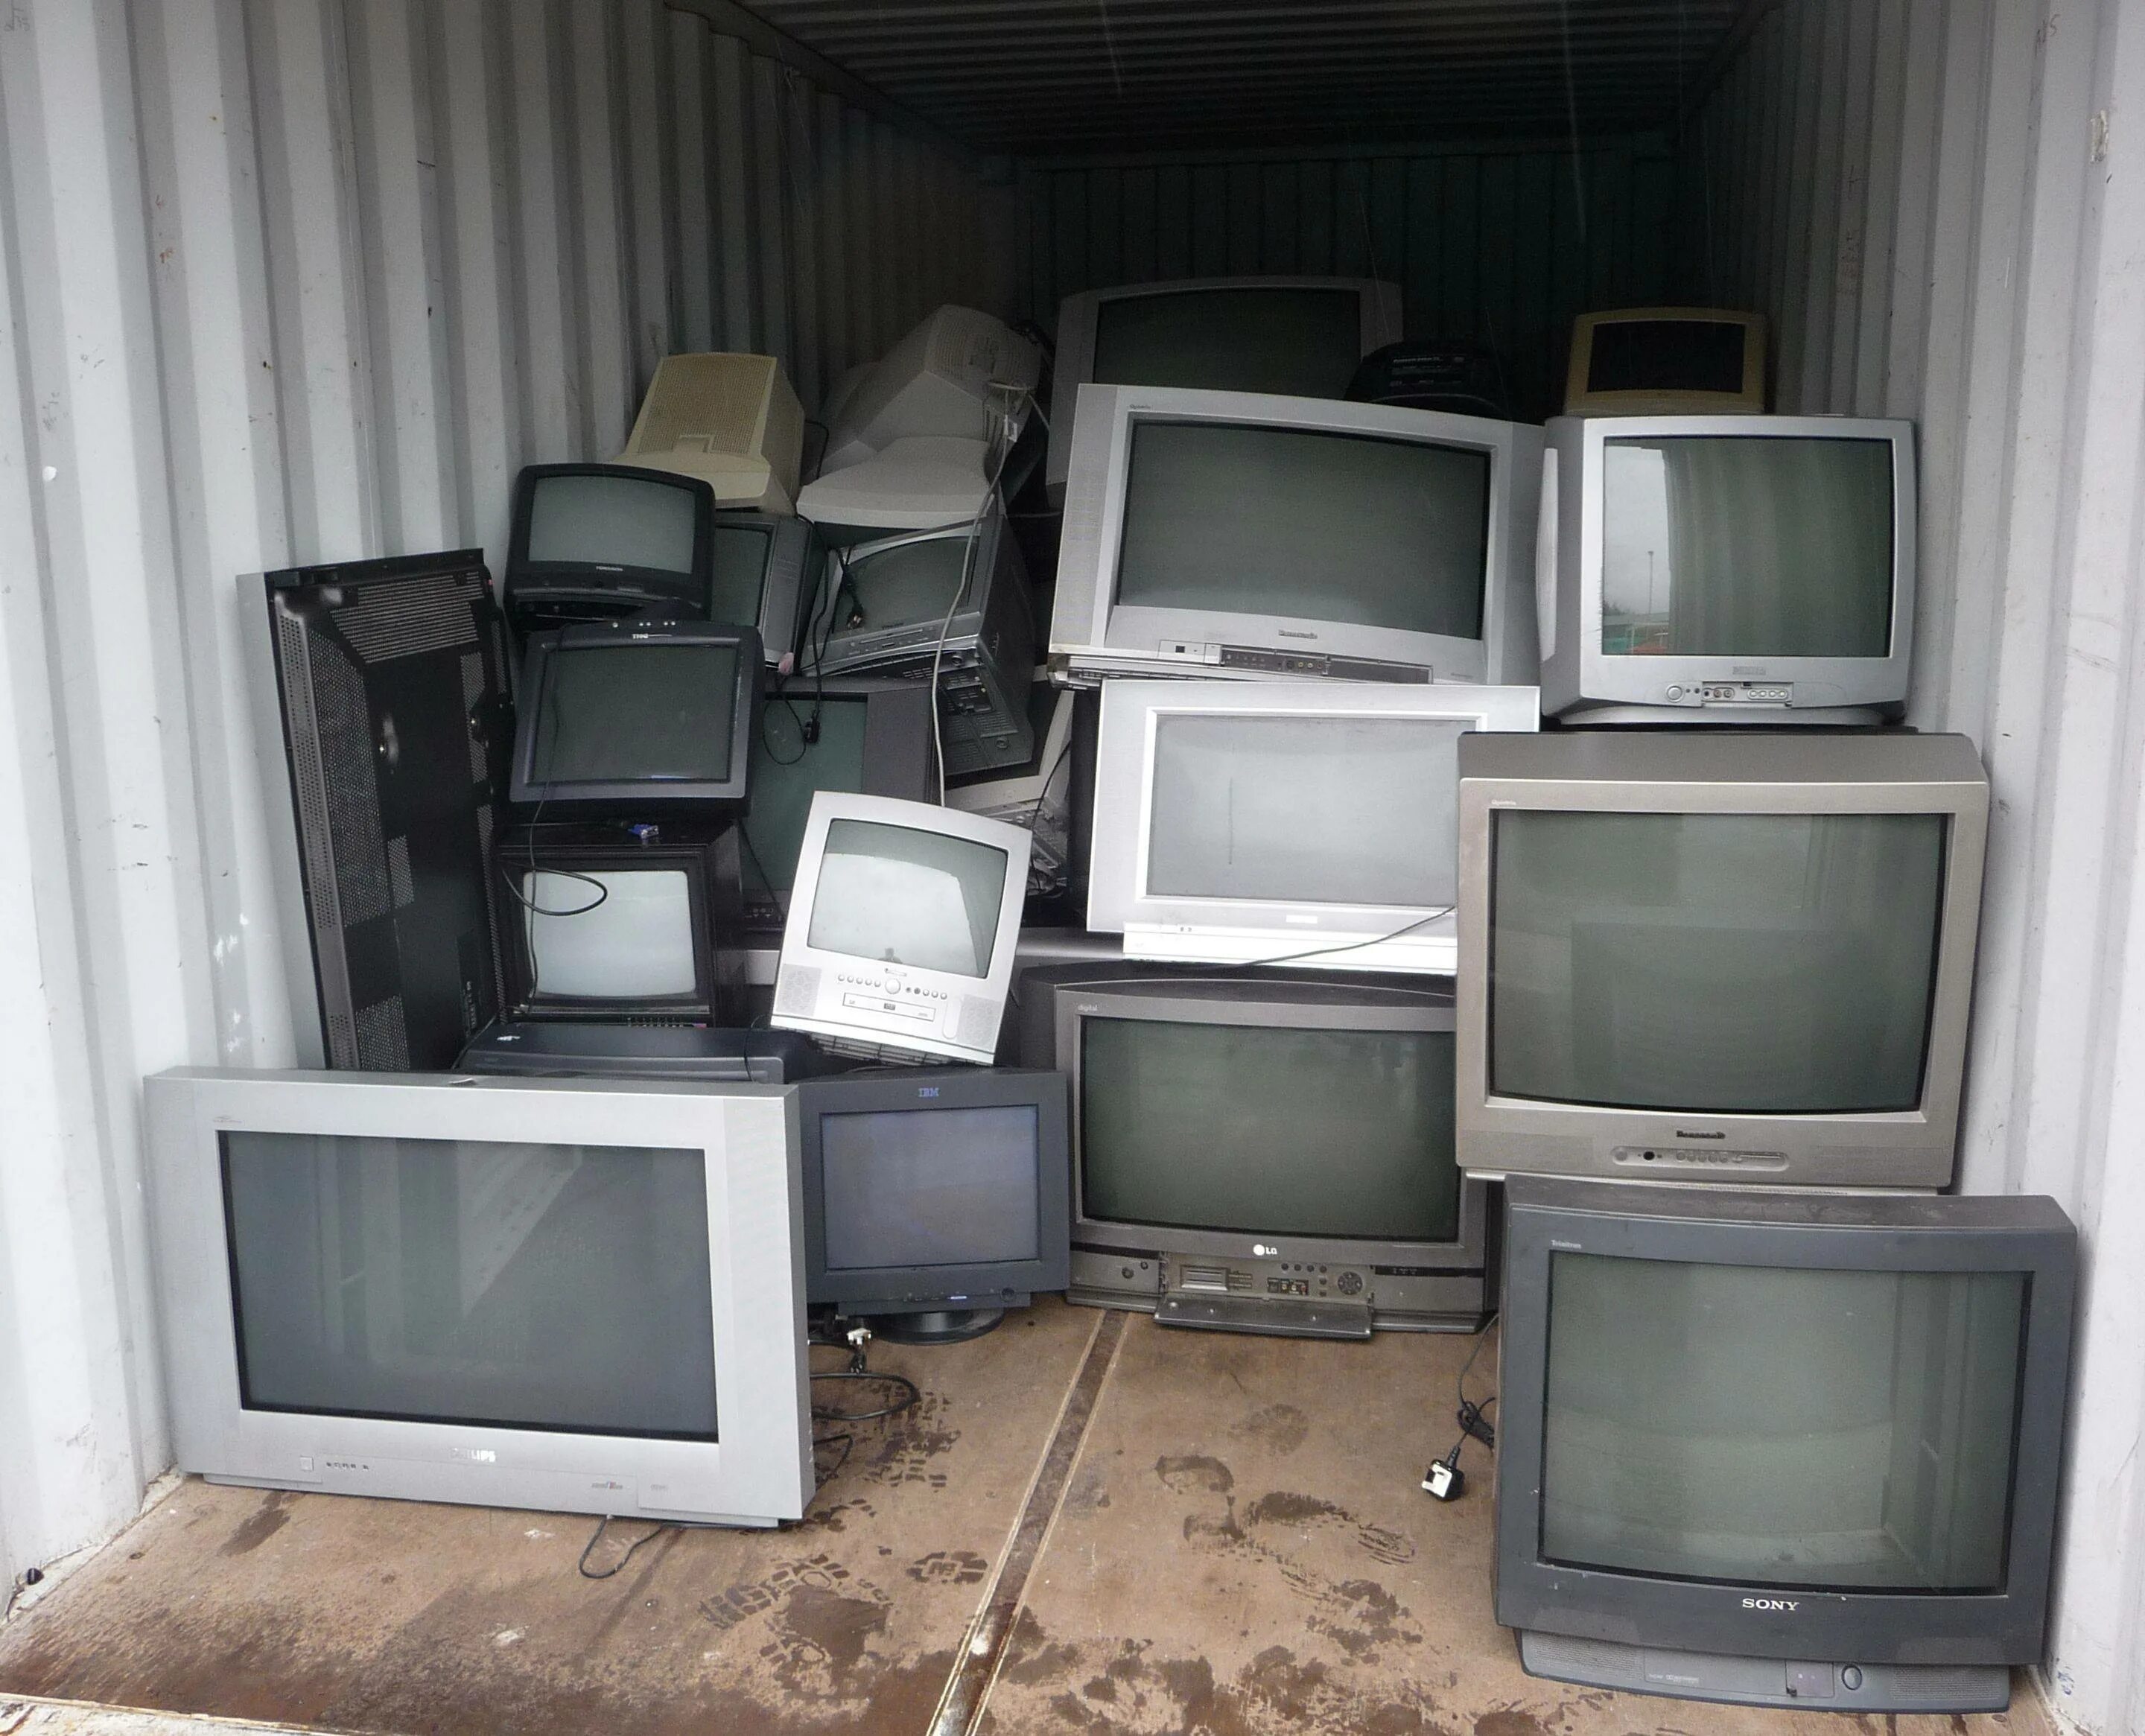 Сдать телевизор за деньги спб. Старый телевизор. Телевизор с кинескопом. Скупают старые телевизоры. Старый кинескопный телевизор.